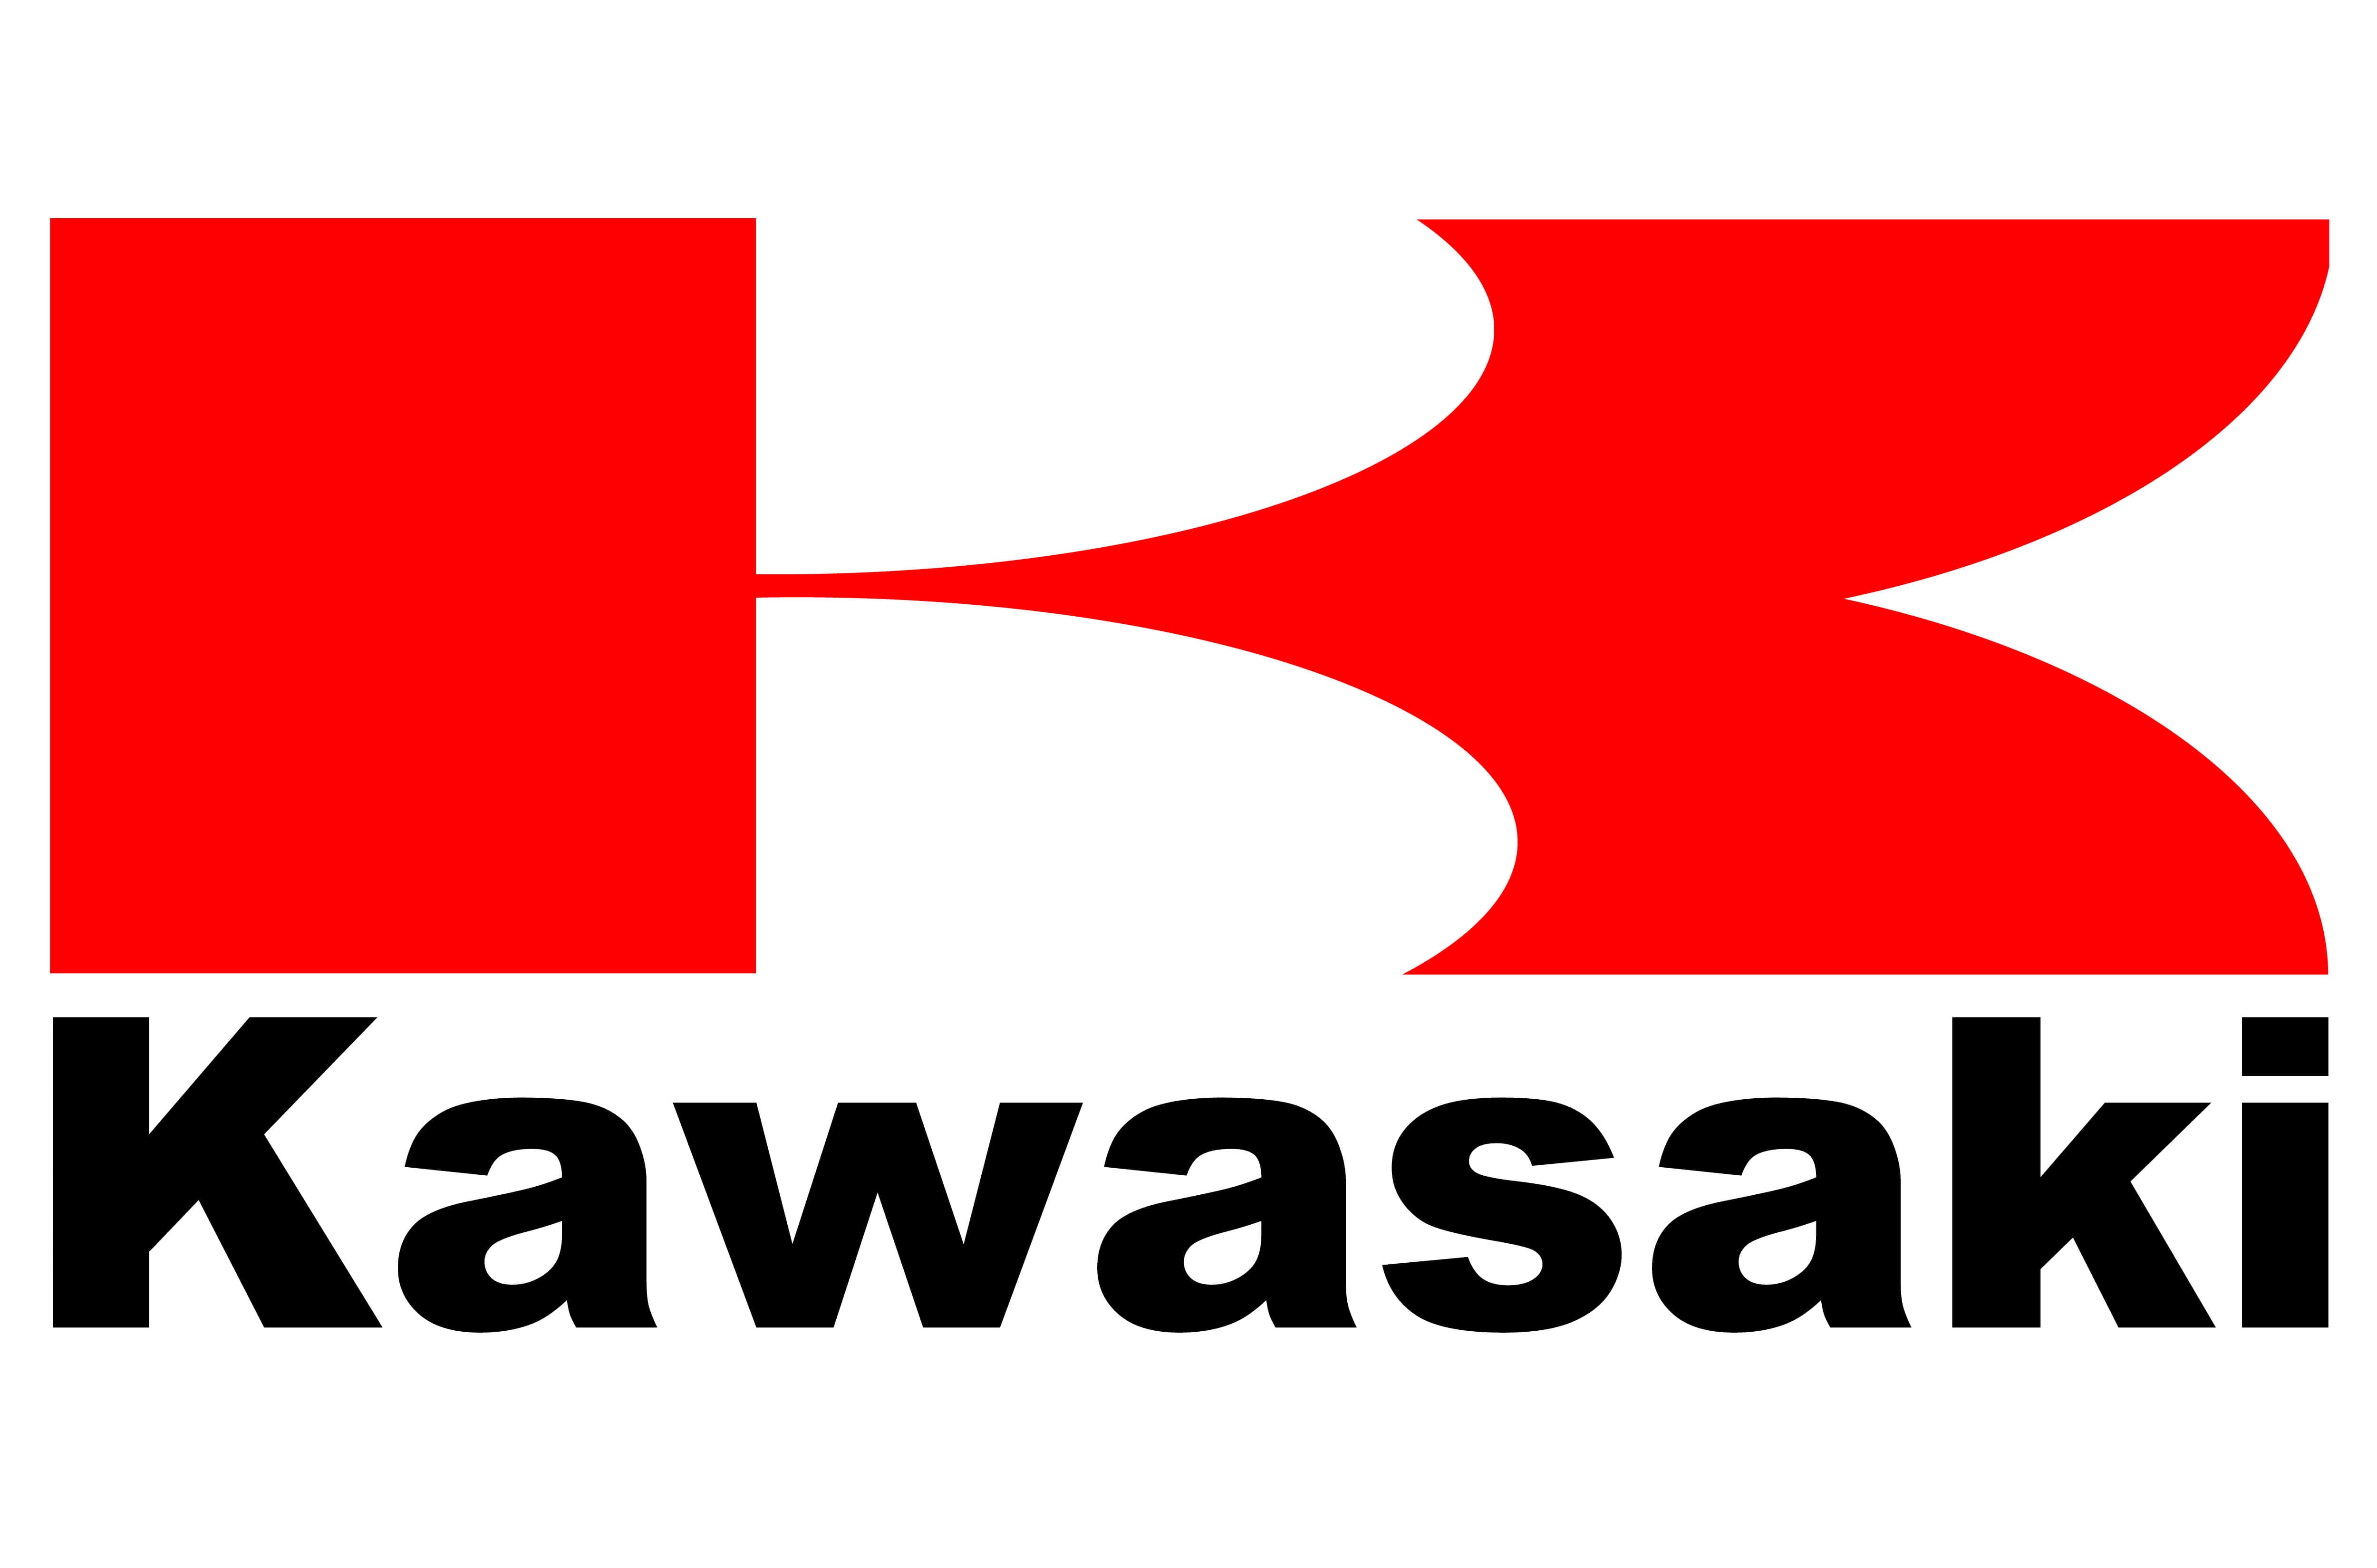 kawasaki logo font